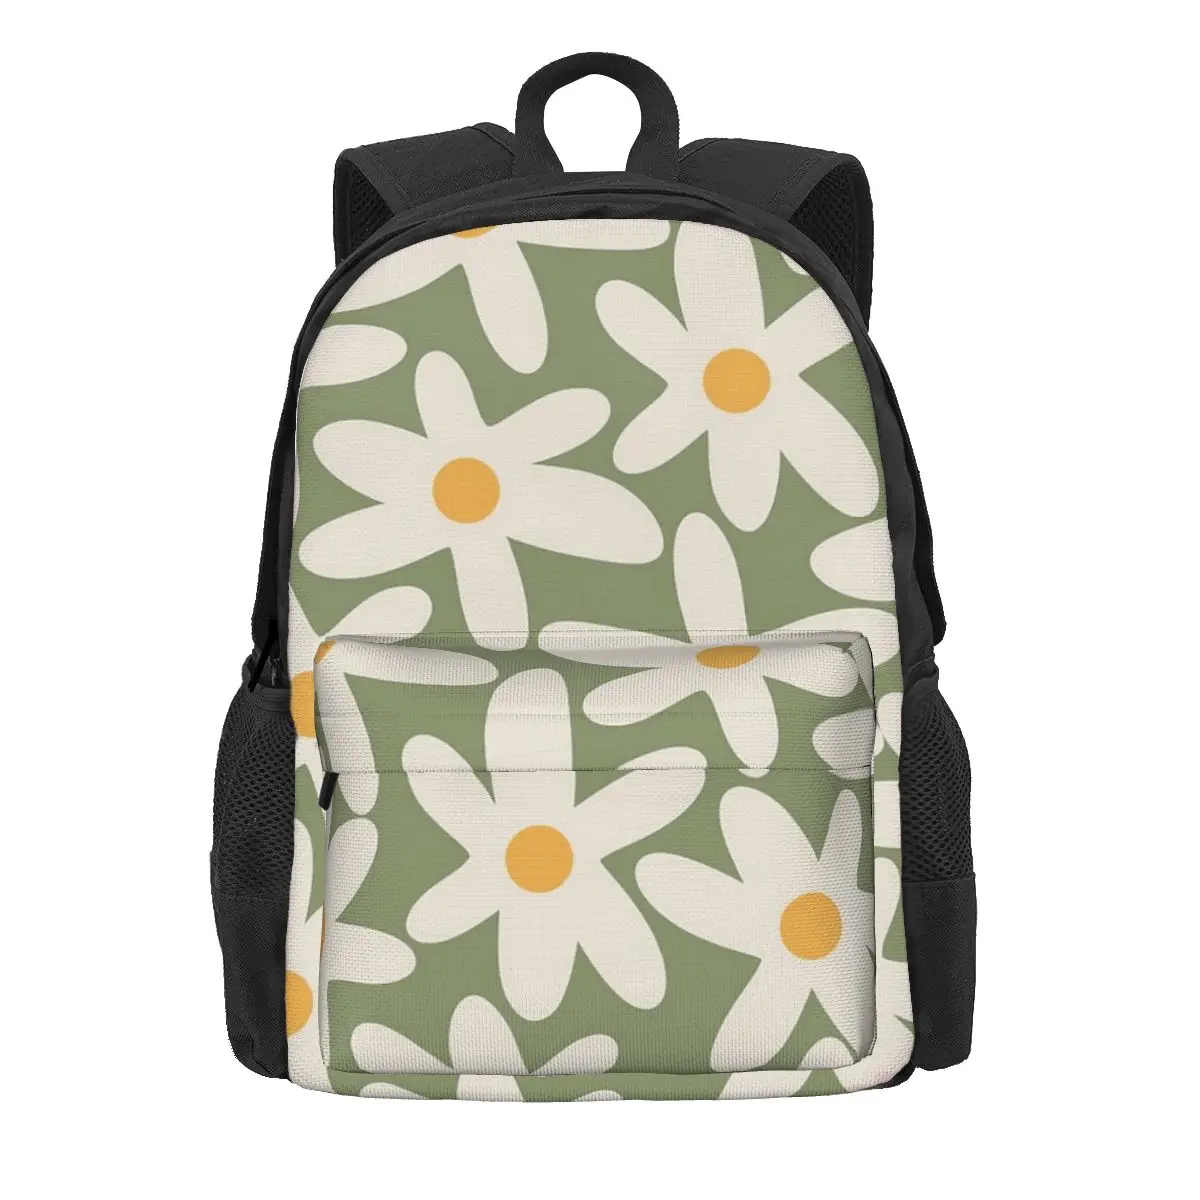 

Daisy Time Retro Floral Pattern Sage Green Beige Mustard Backpack Large Capacity Student School Bag Shoulder Bag Laptop Rucksack